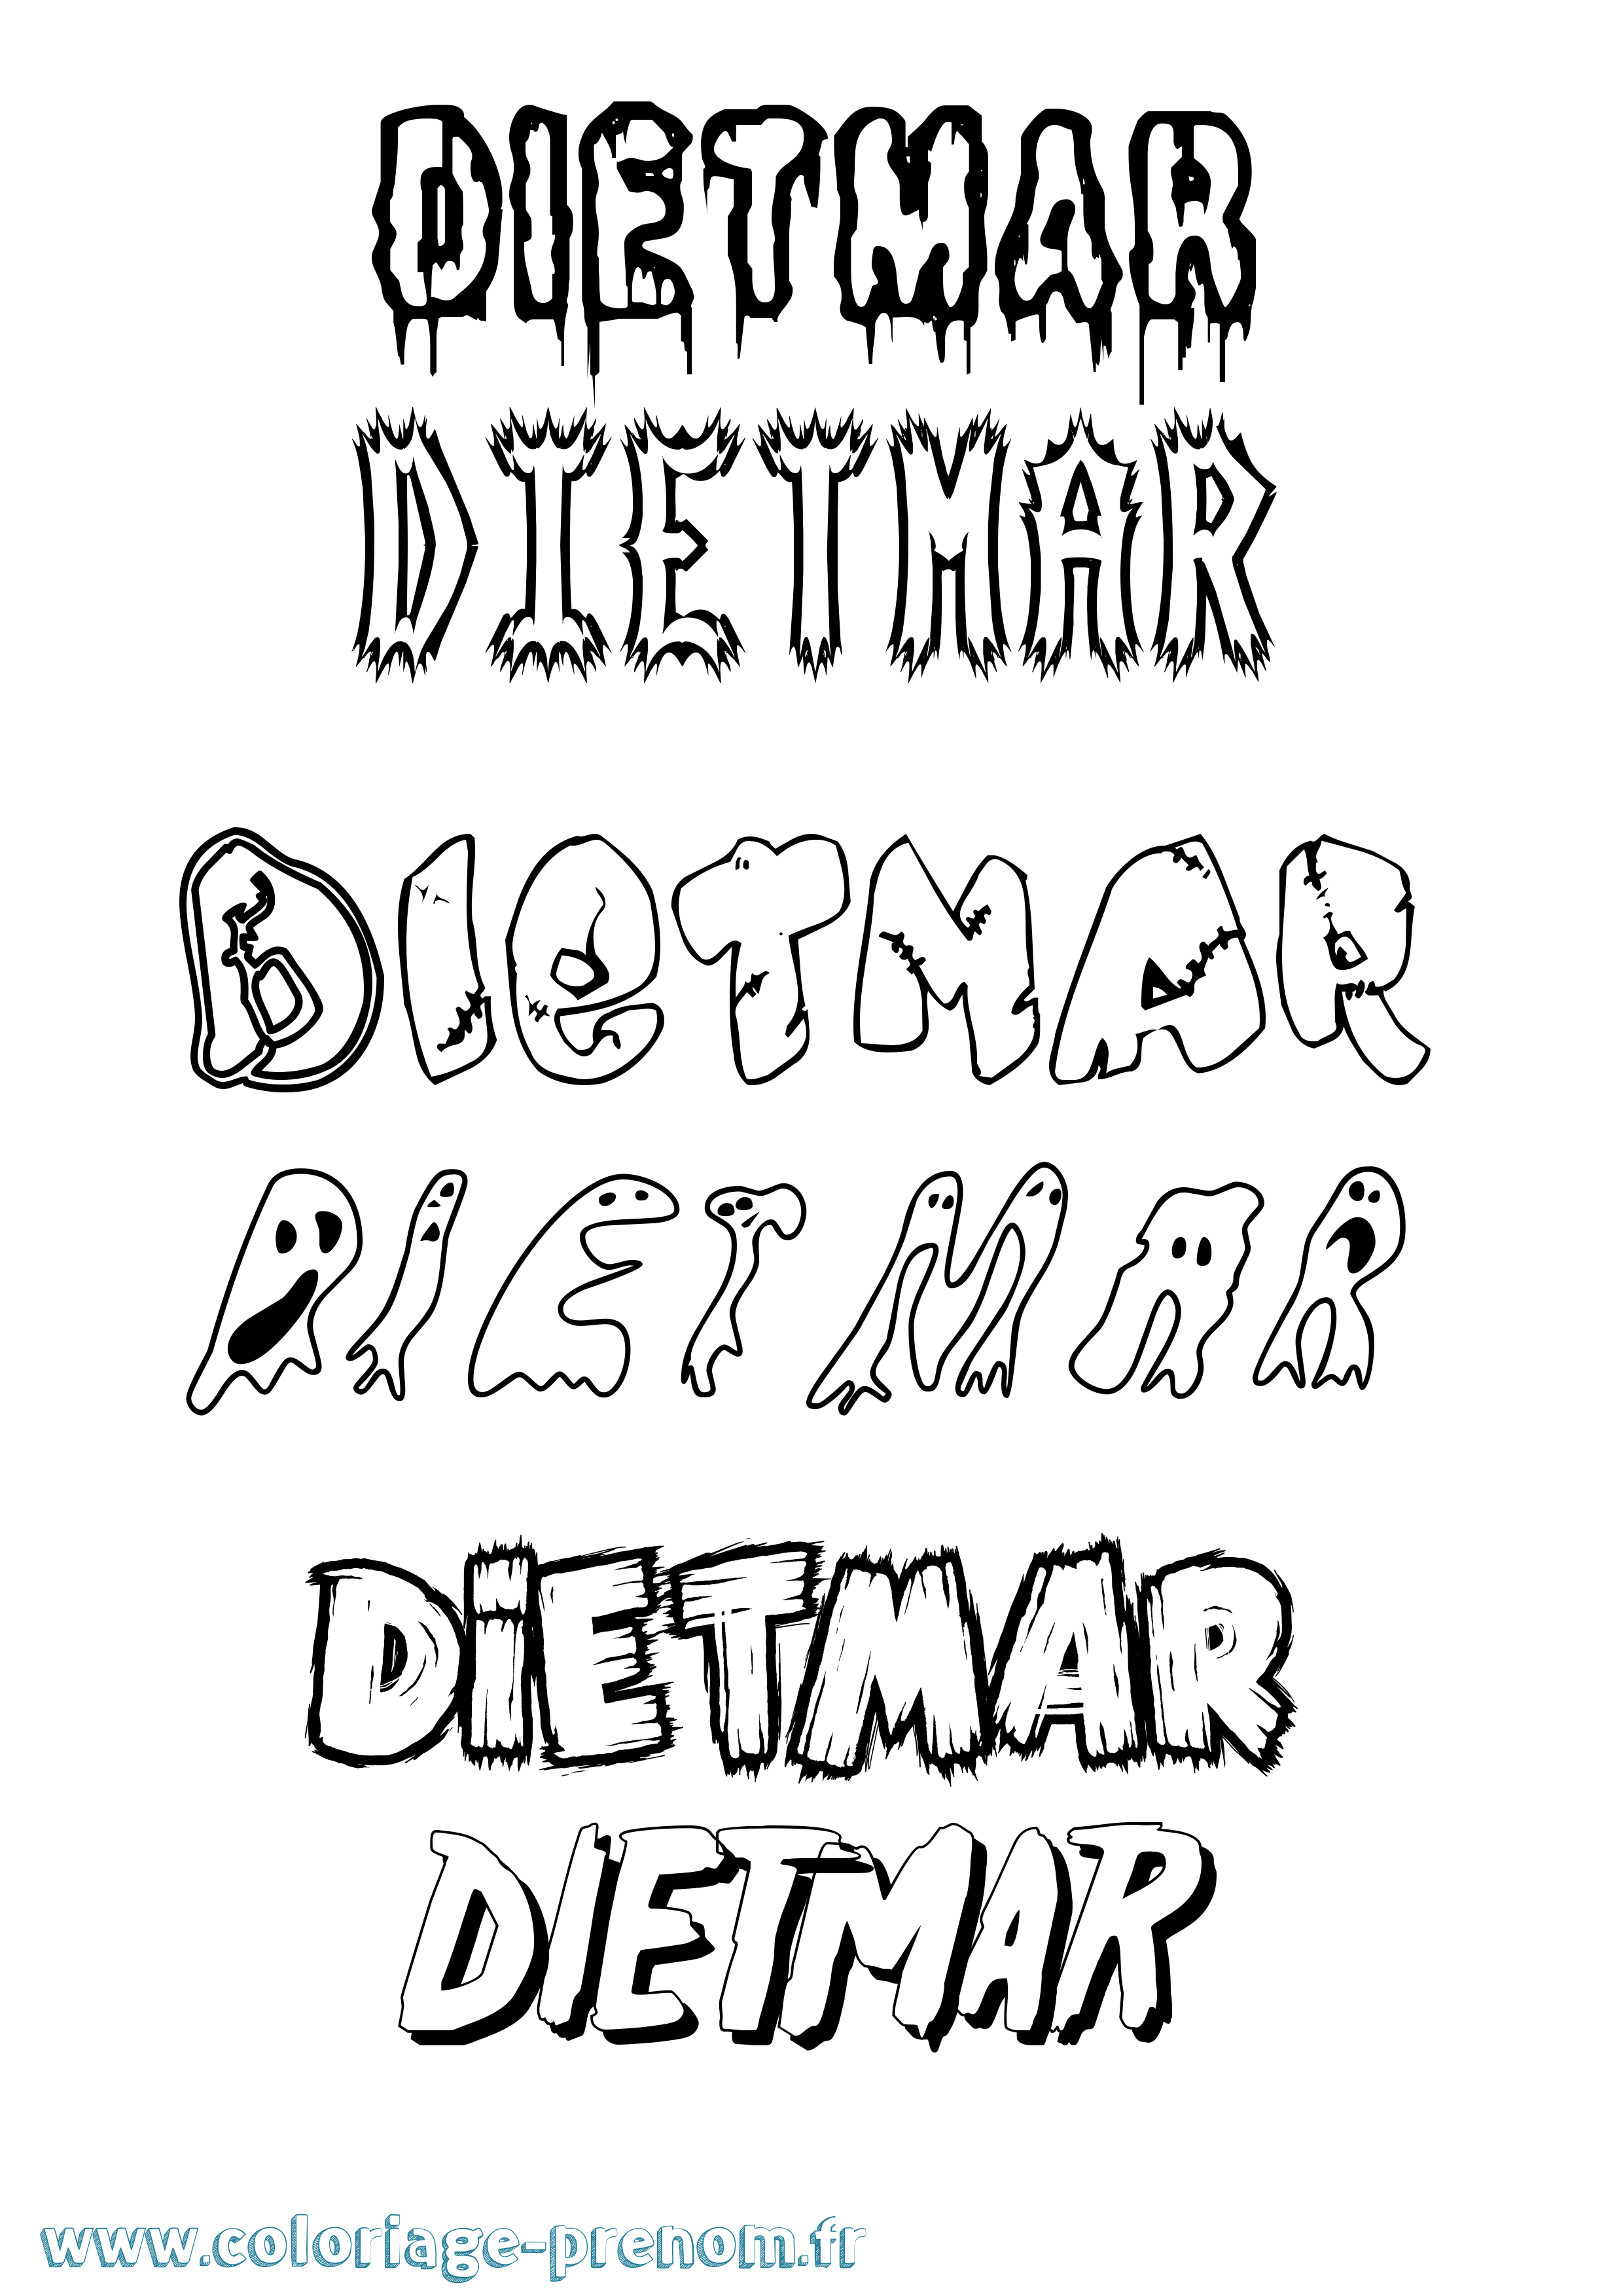 Coloriage prénom Dietmar Frisson